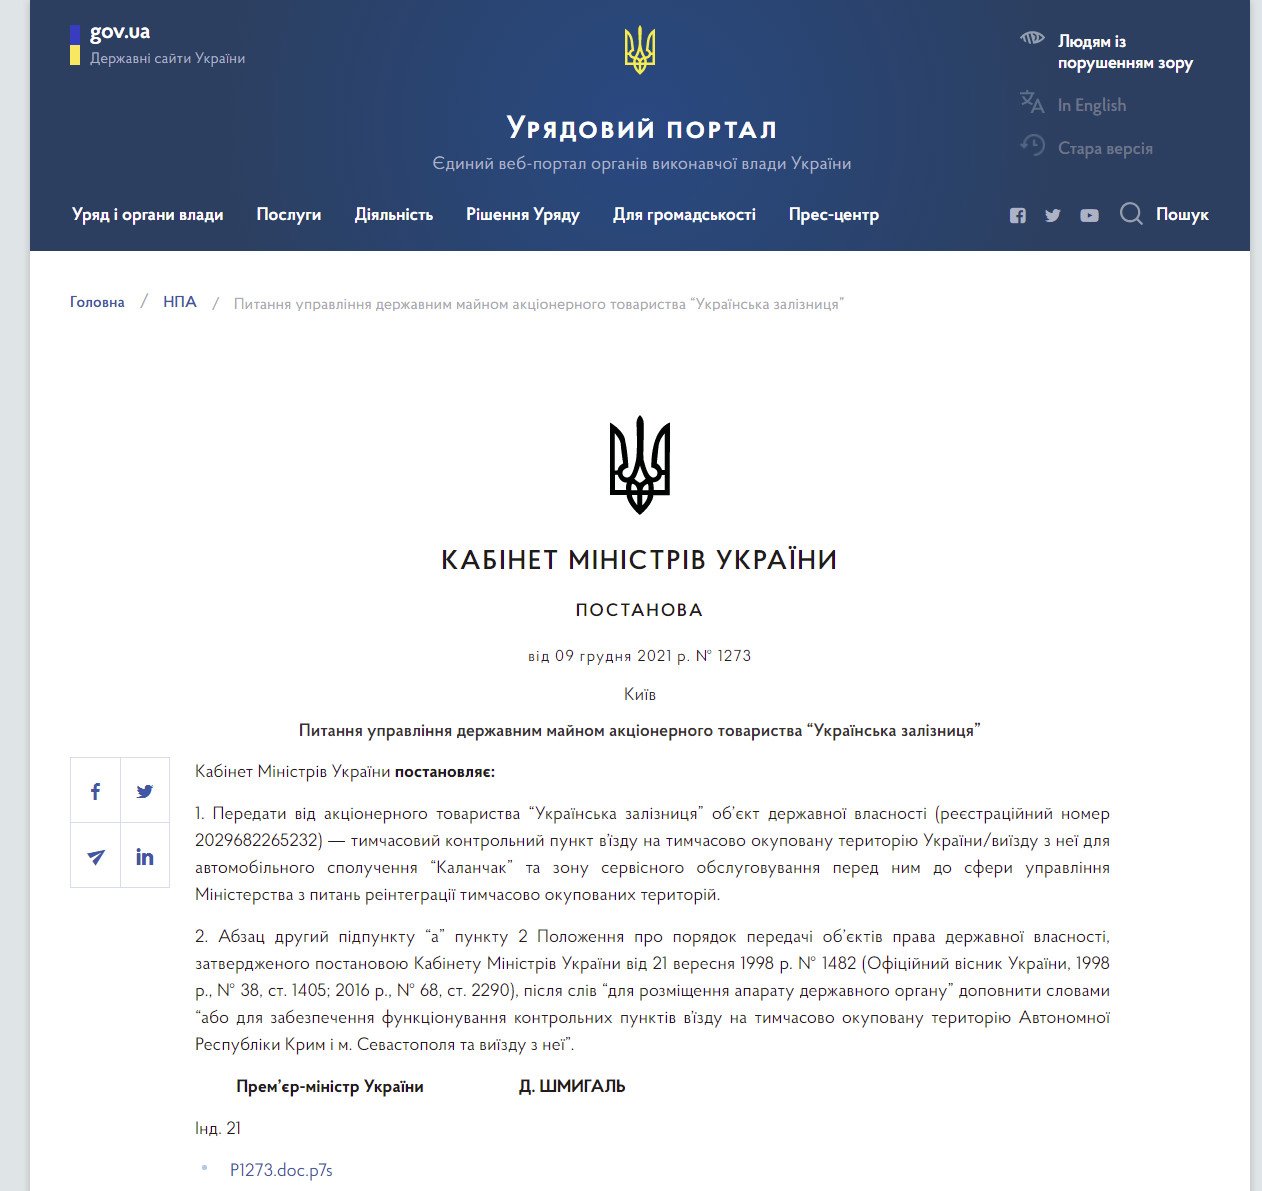 https://www.kmu.gov.ua/npas/pitannya-upravlinnya-derzhavnim-majnom-akcionernogo-tovaristva-ukrayinska-zaliznicya-1273-091221